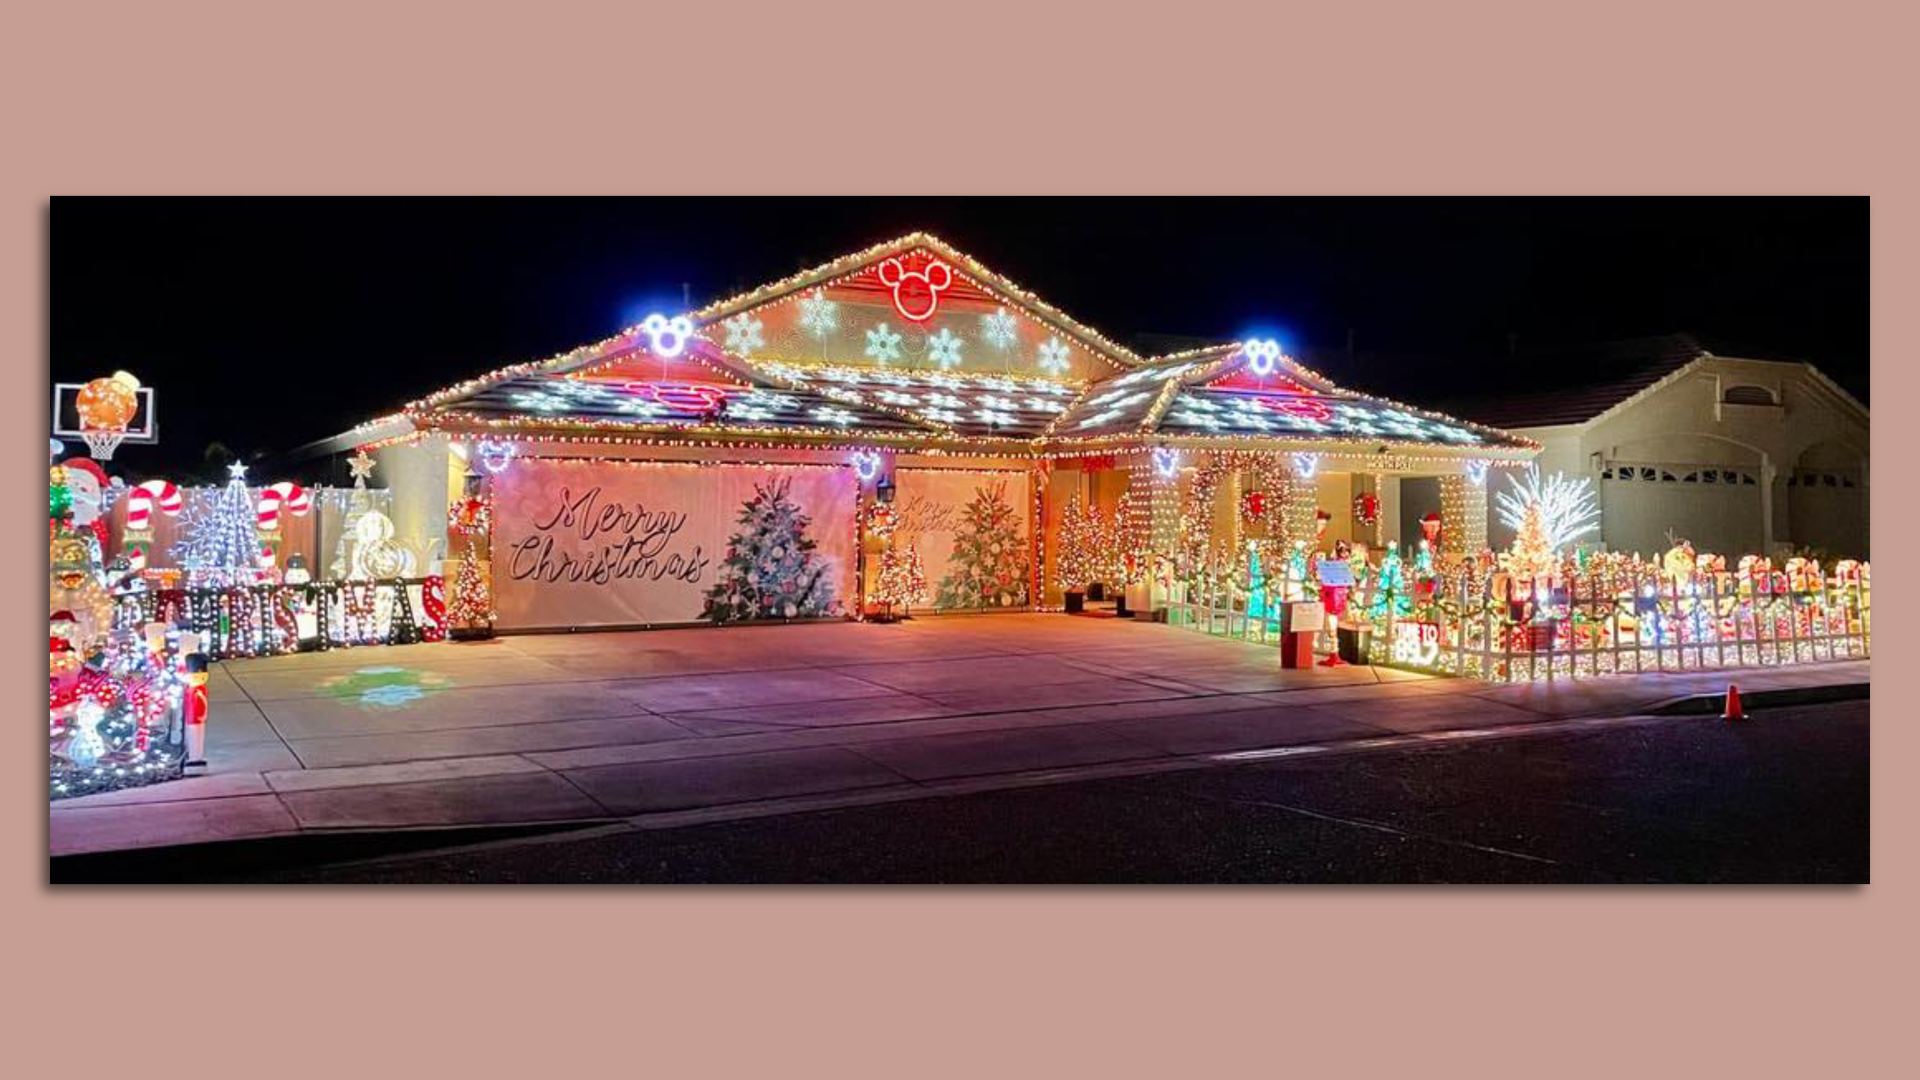 The best neighborhoods for Christmas lights in metro Phoenix ...